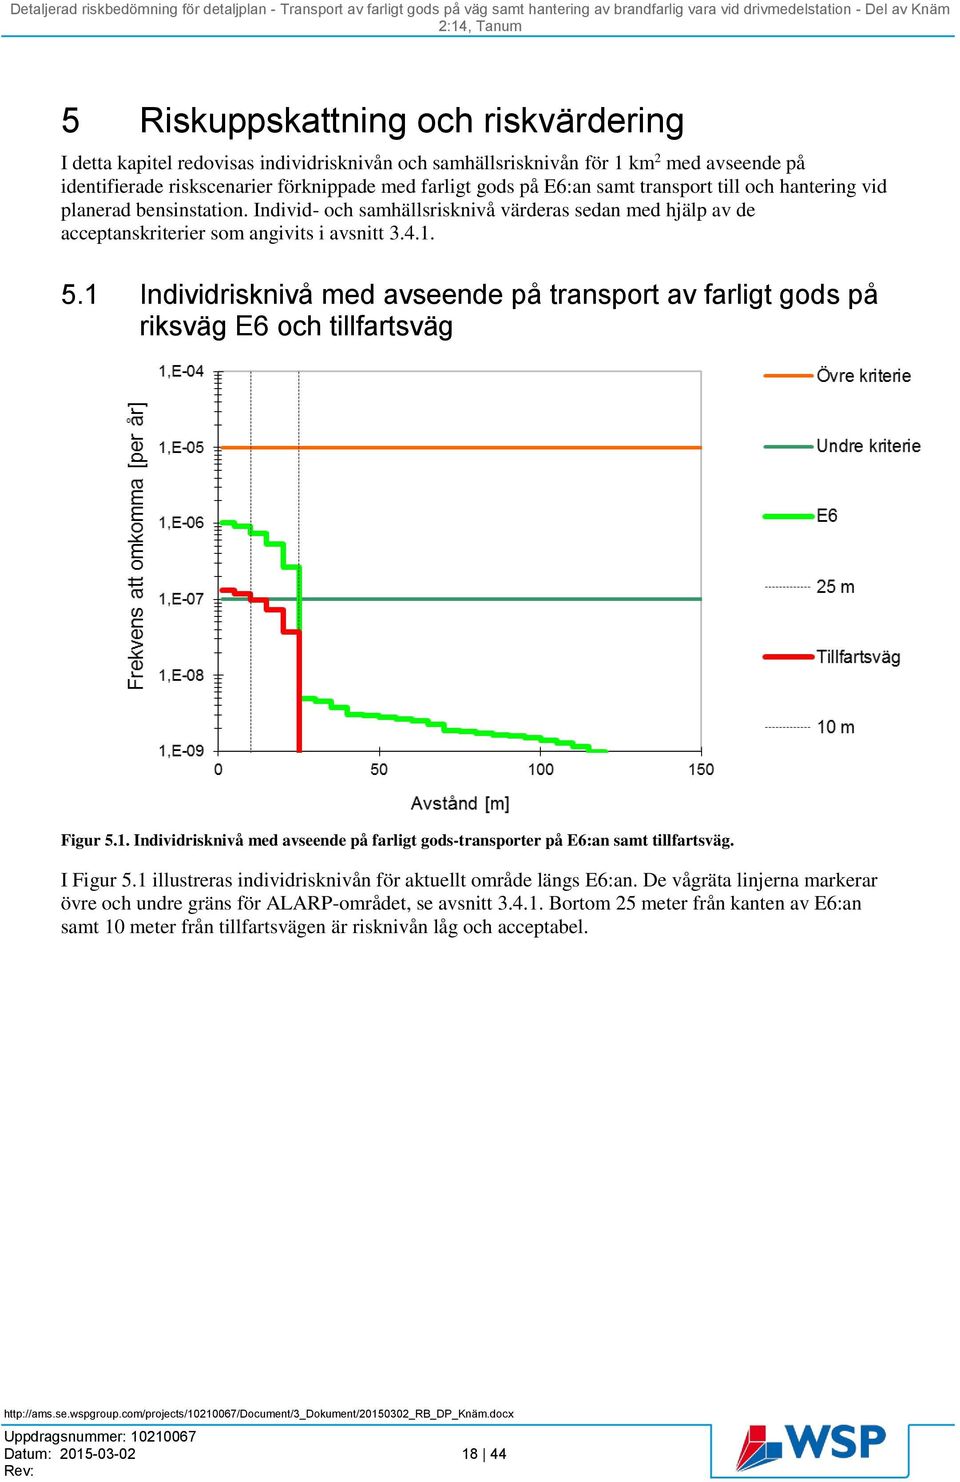 1 Individrisknivå med avseende på transport av farligt gods på riksväg E6 och tillfartsväg Figur 5.1. Individrisknivå med avseende på farligt gods-transporter på E6:an samt tillfartsväg. I Figur 5.